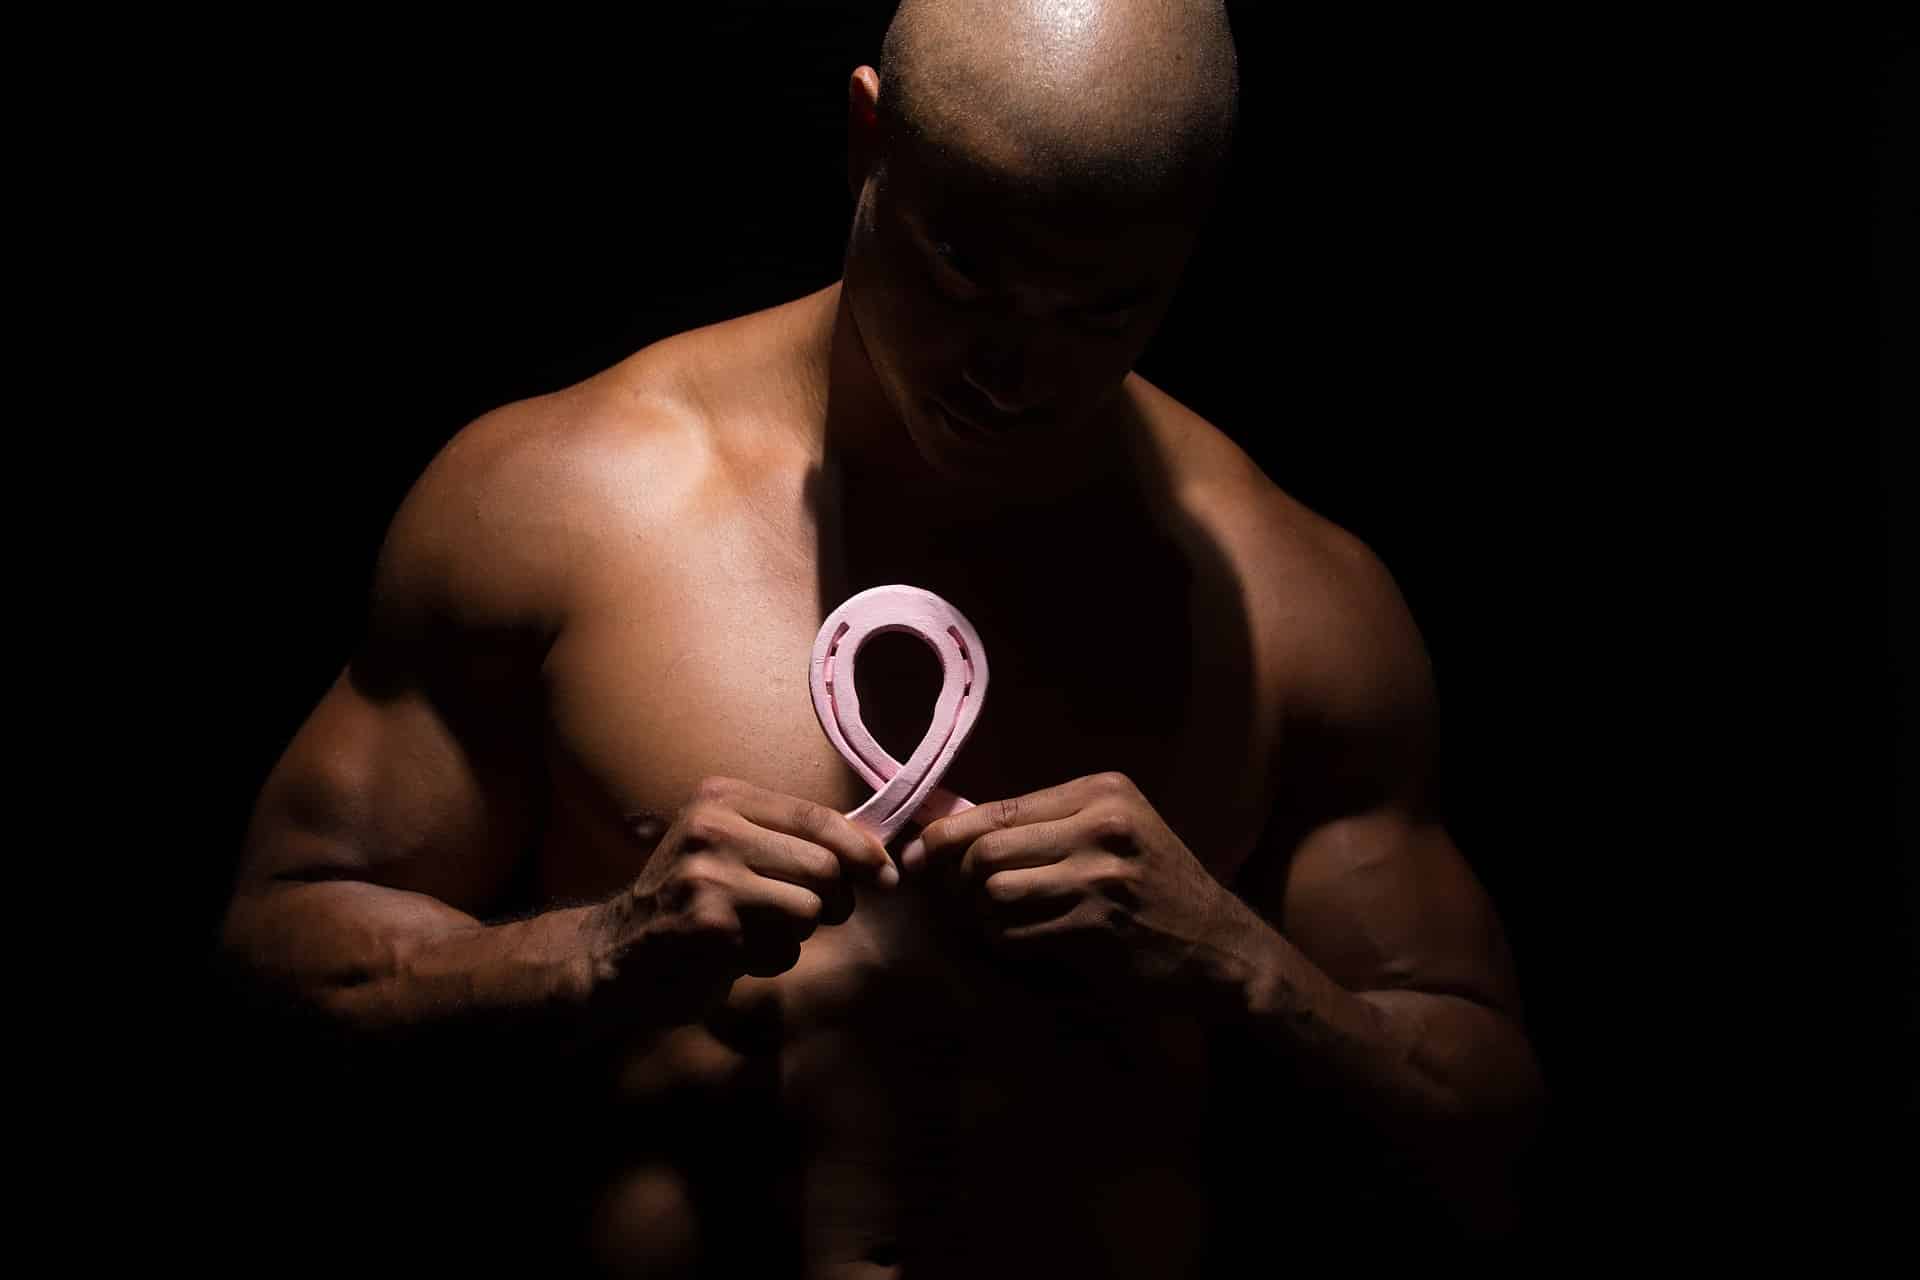 Männer und Brustkrebs – wie passt das zusammen?